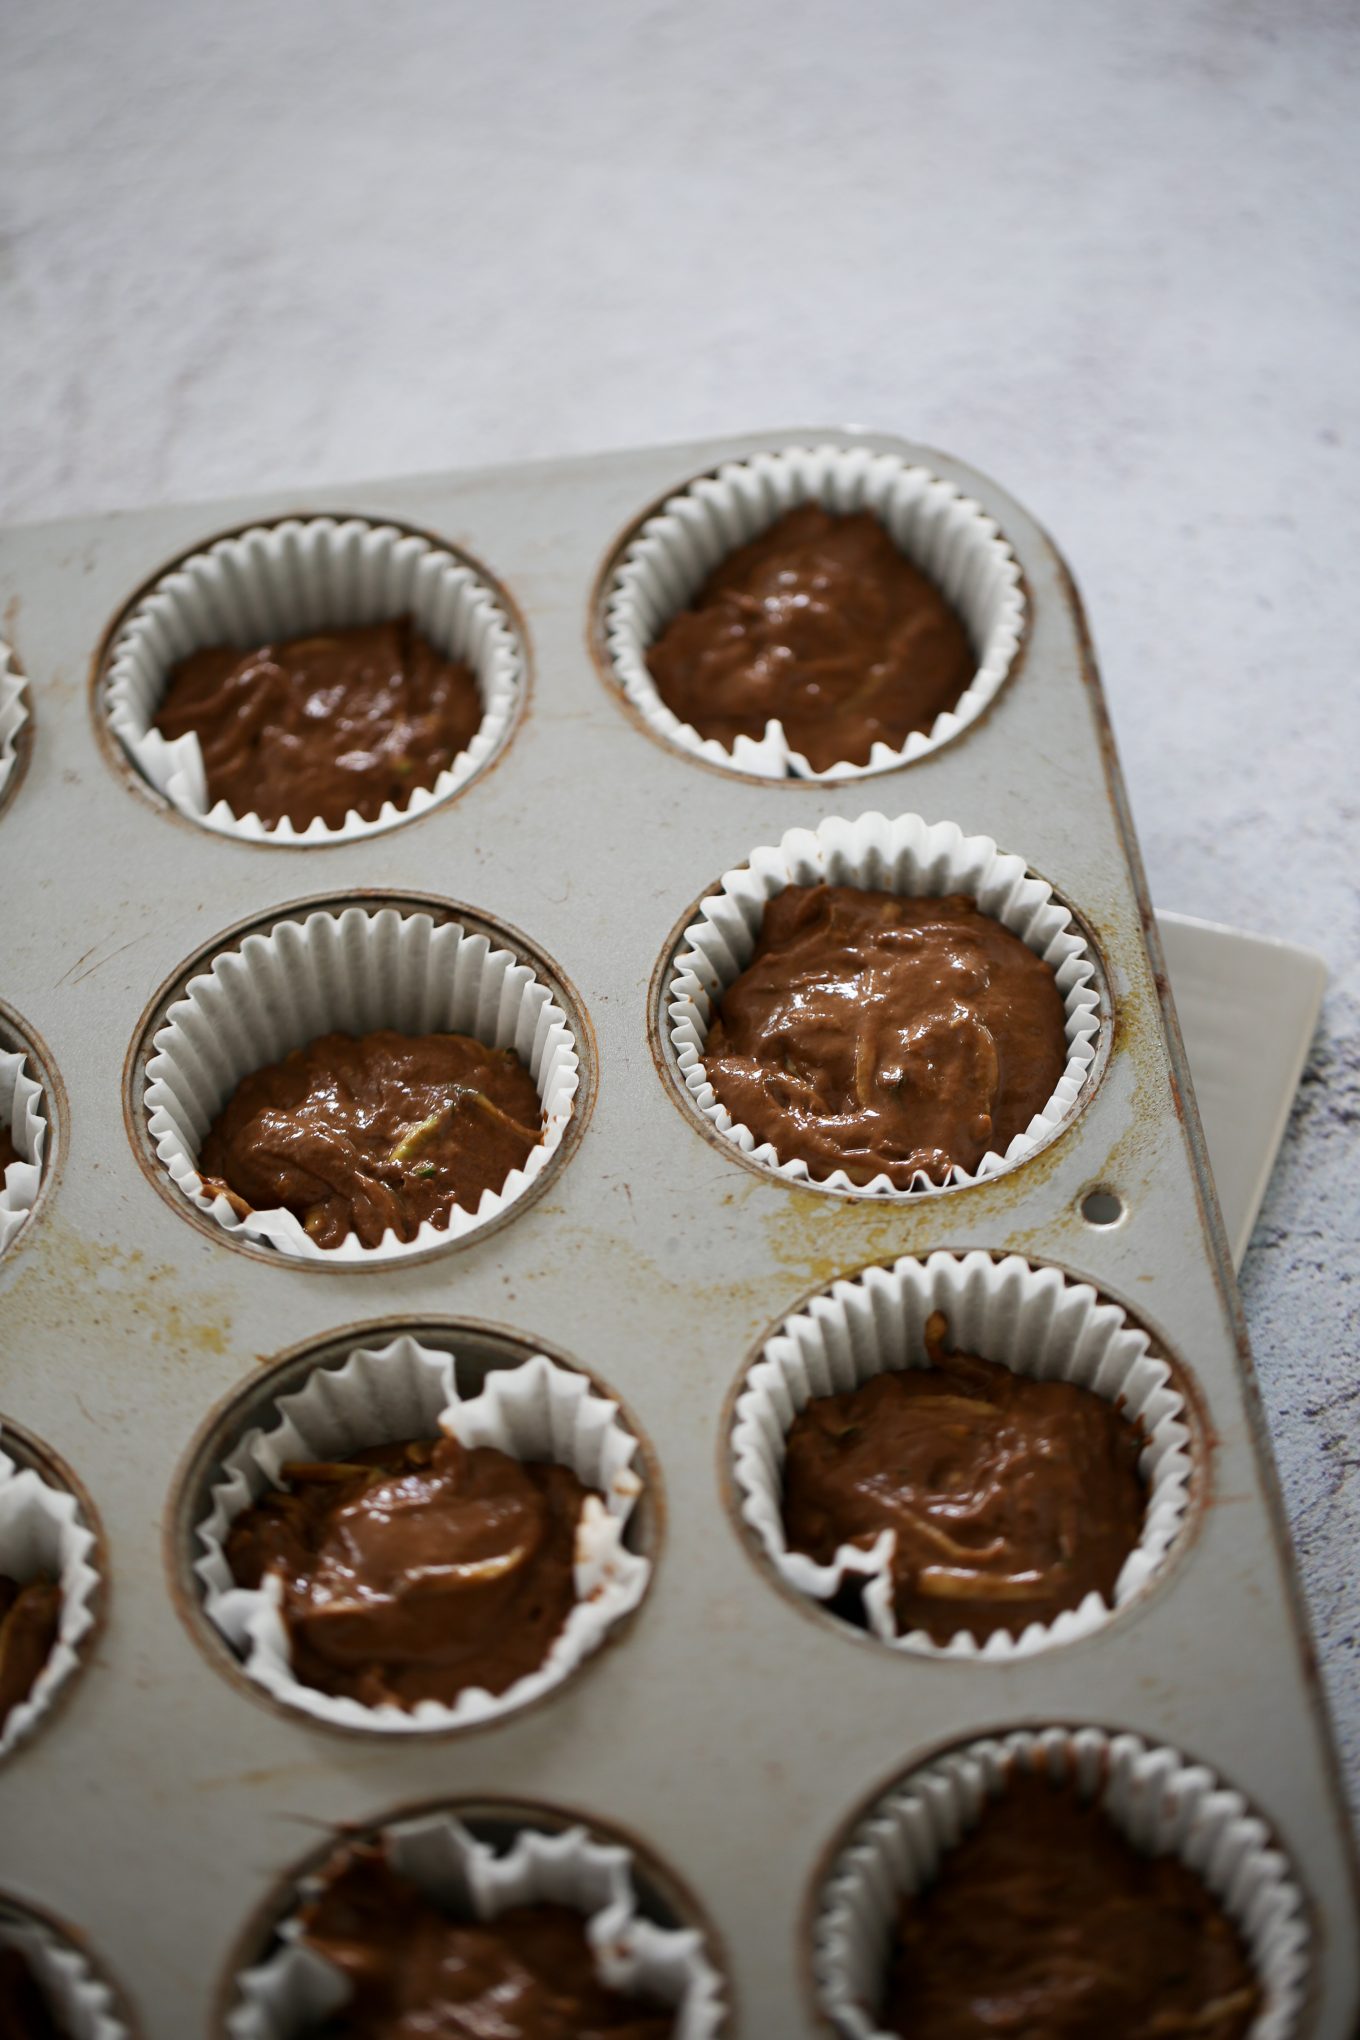 muffins de chocolate y calabacita antes de meter al horno